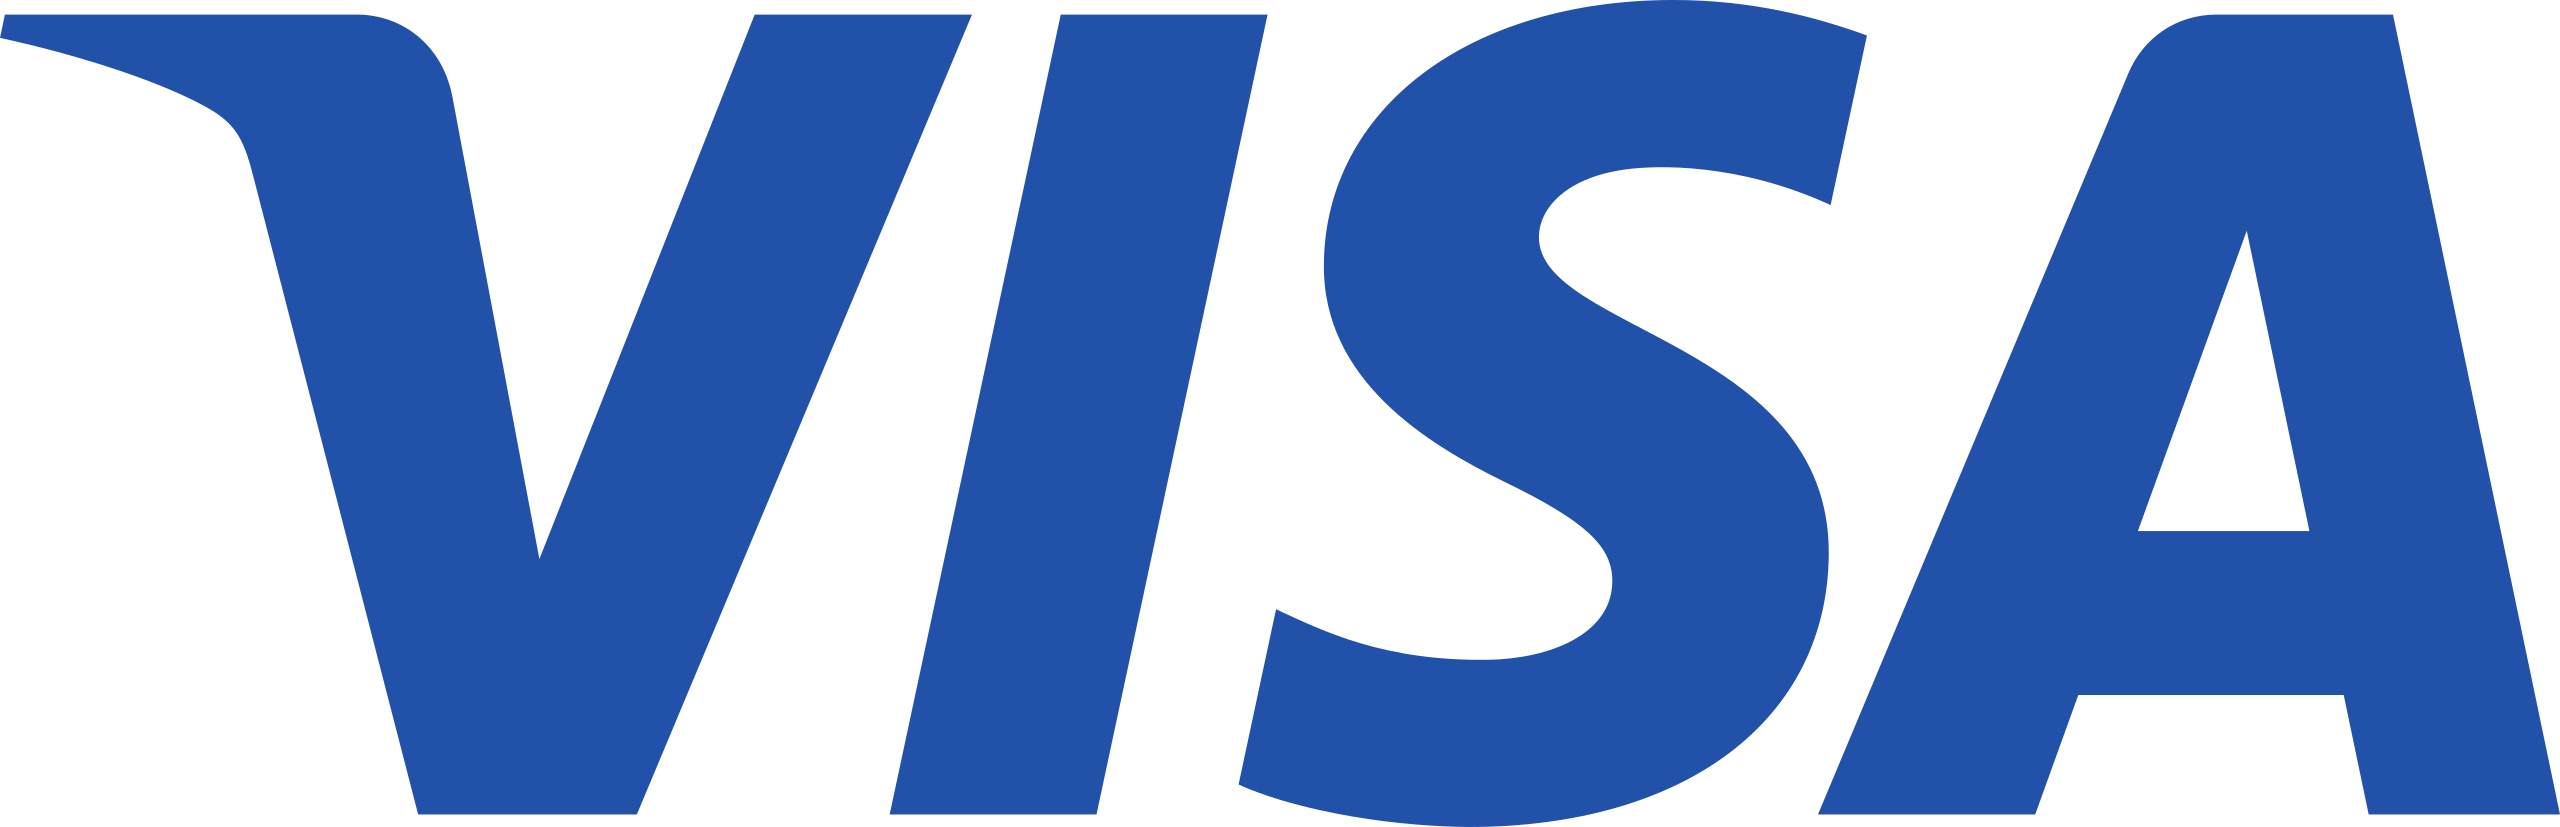 Visa Inc. Logo